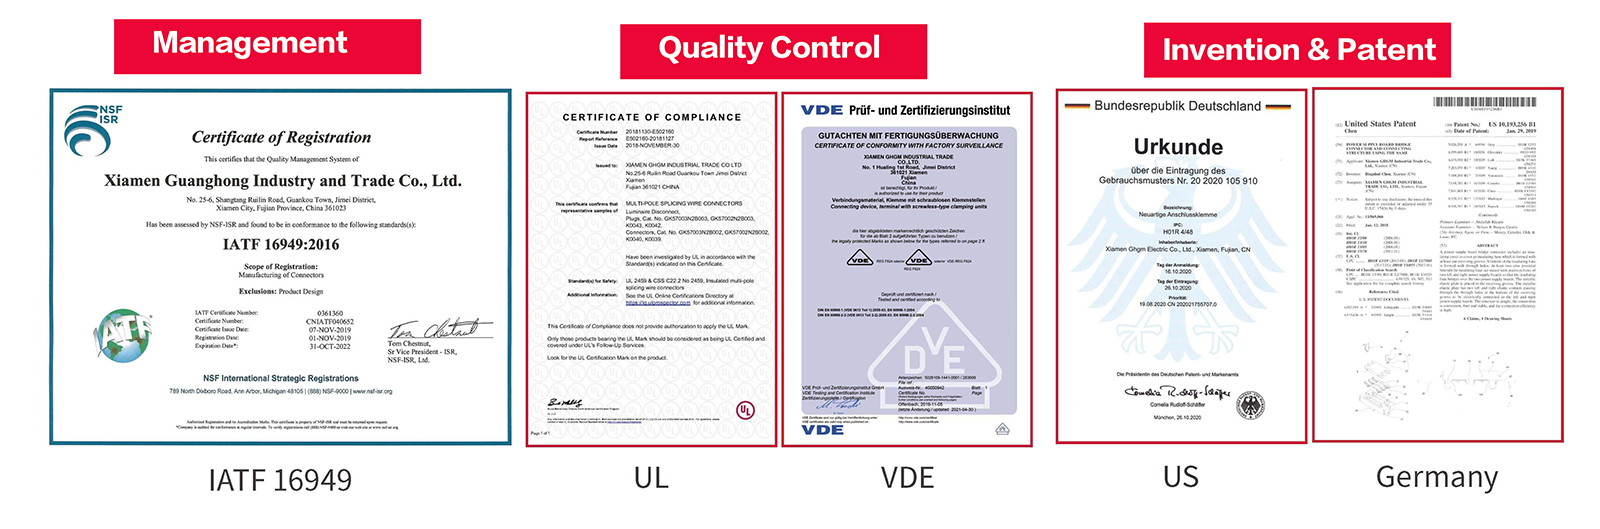 GHGM-Zertifikat, Qualitätskontrolle, Erfindung und Patente.jpg